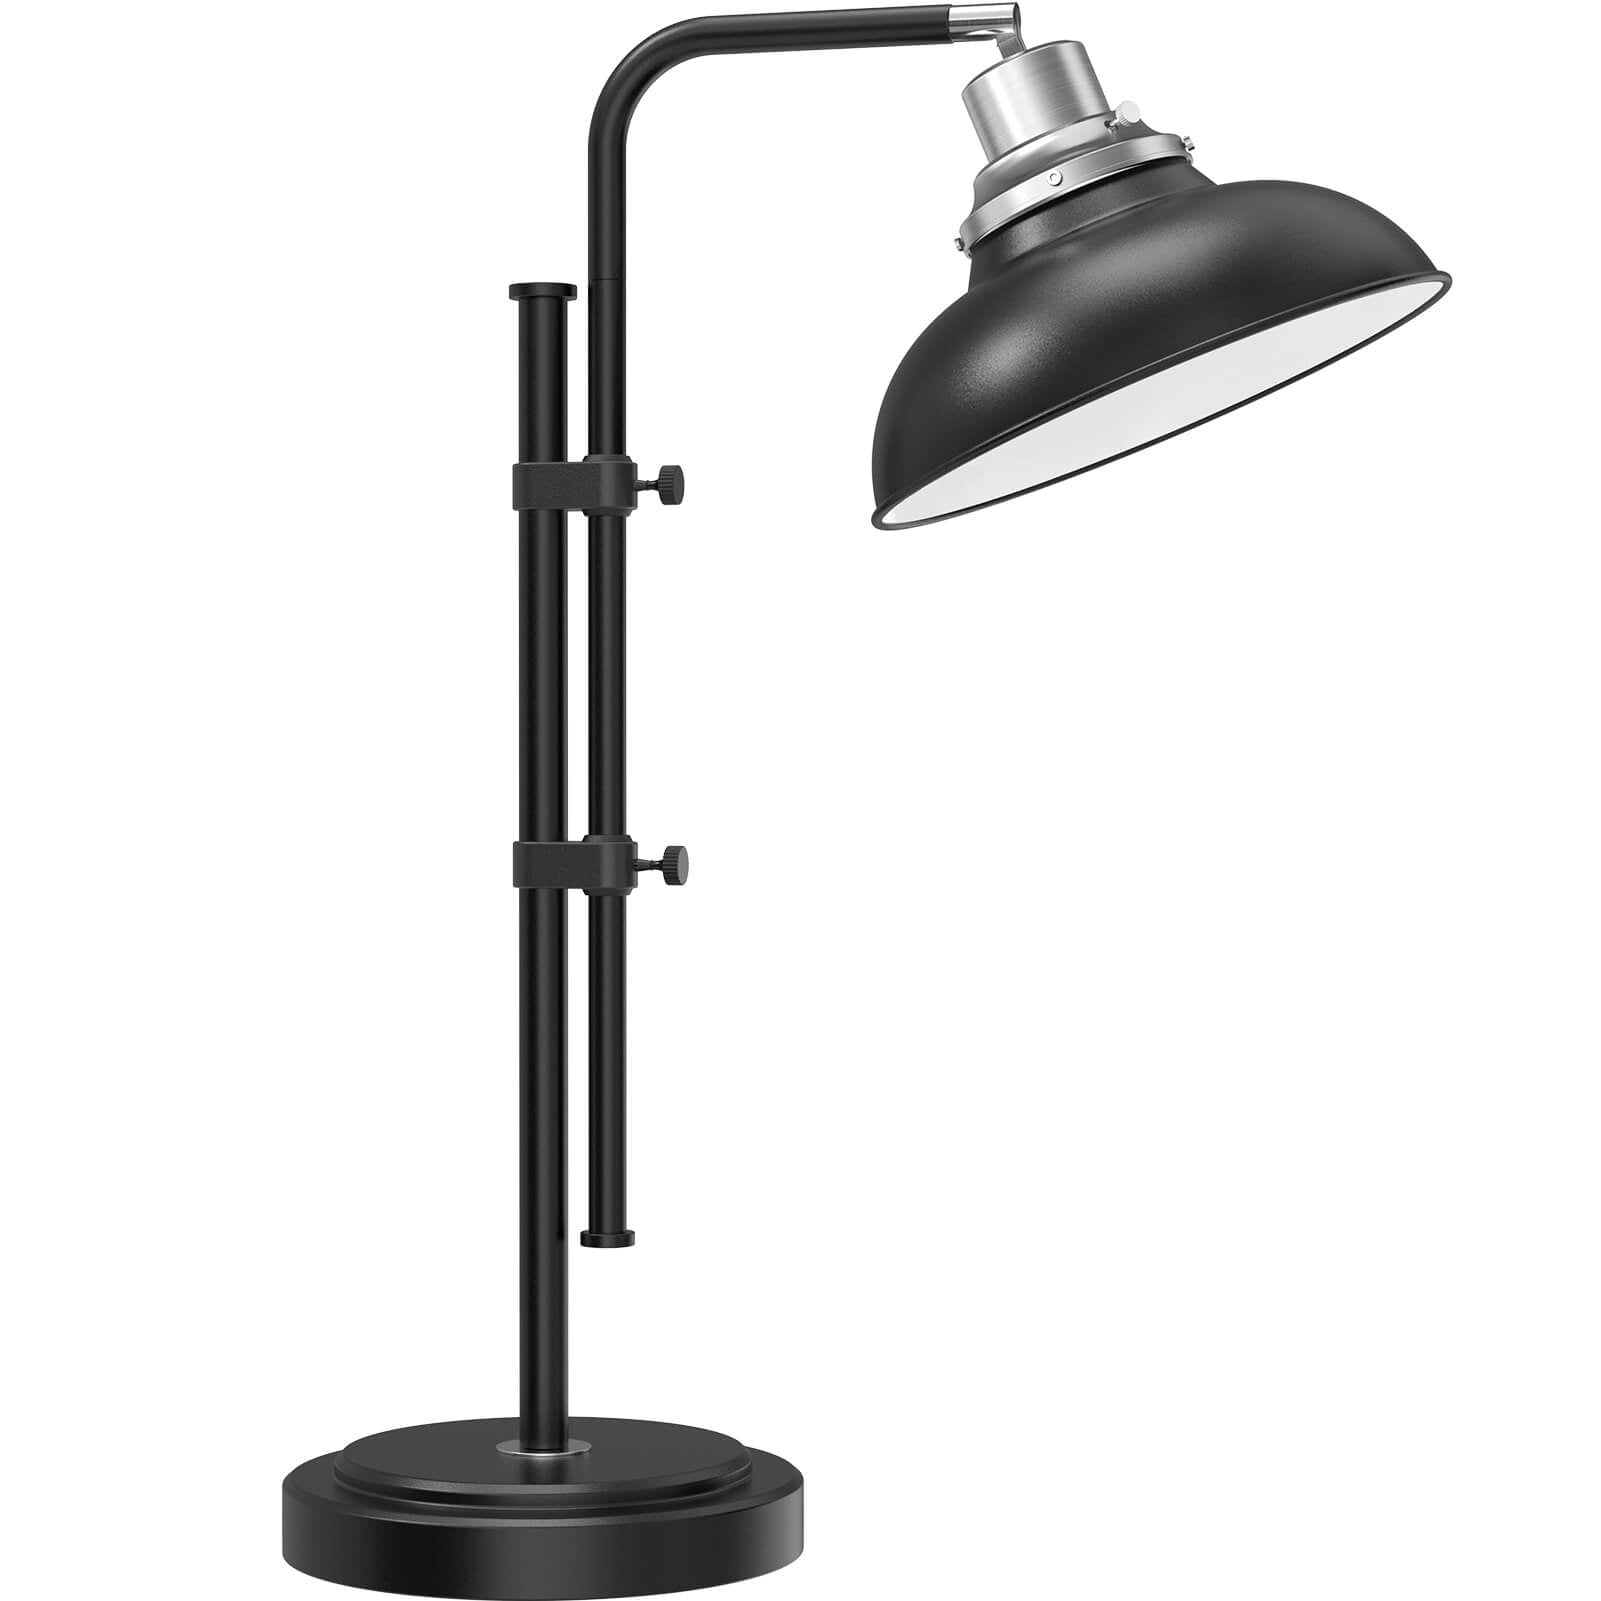 LEPOWER Industrial Desk Lamp 